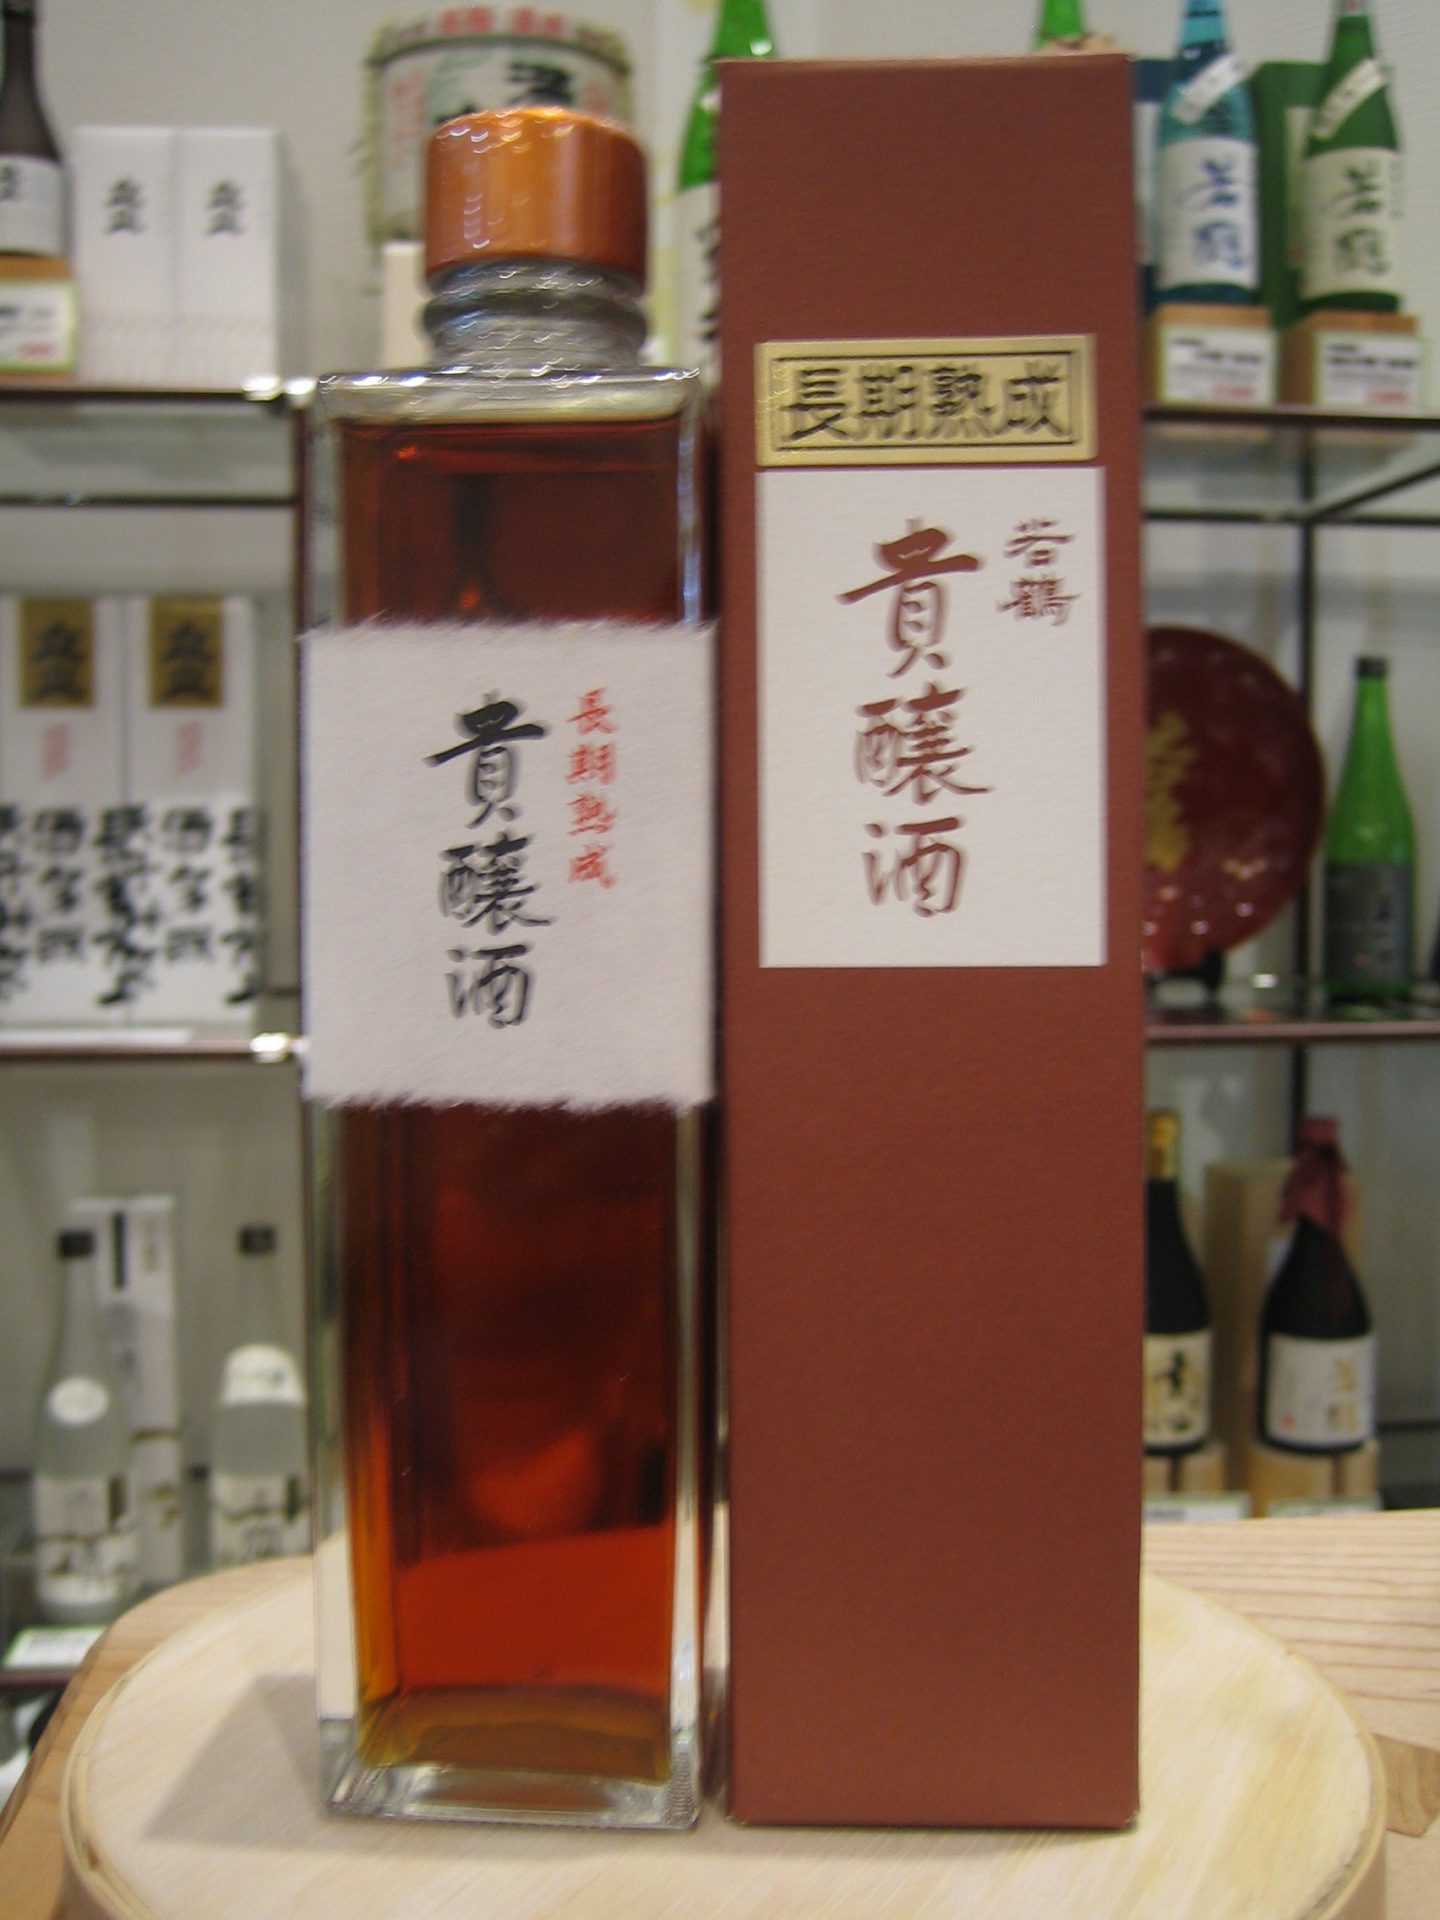 富山の地酒「貴醸酒」 | 富岡屋